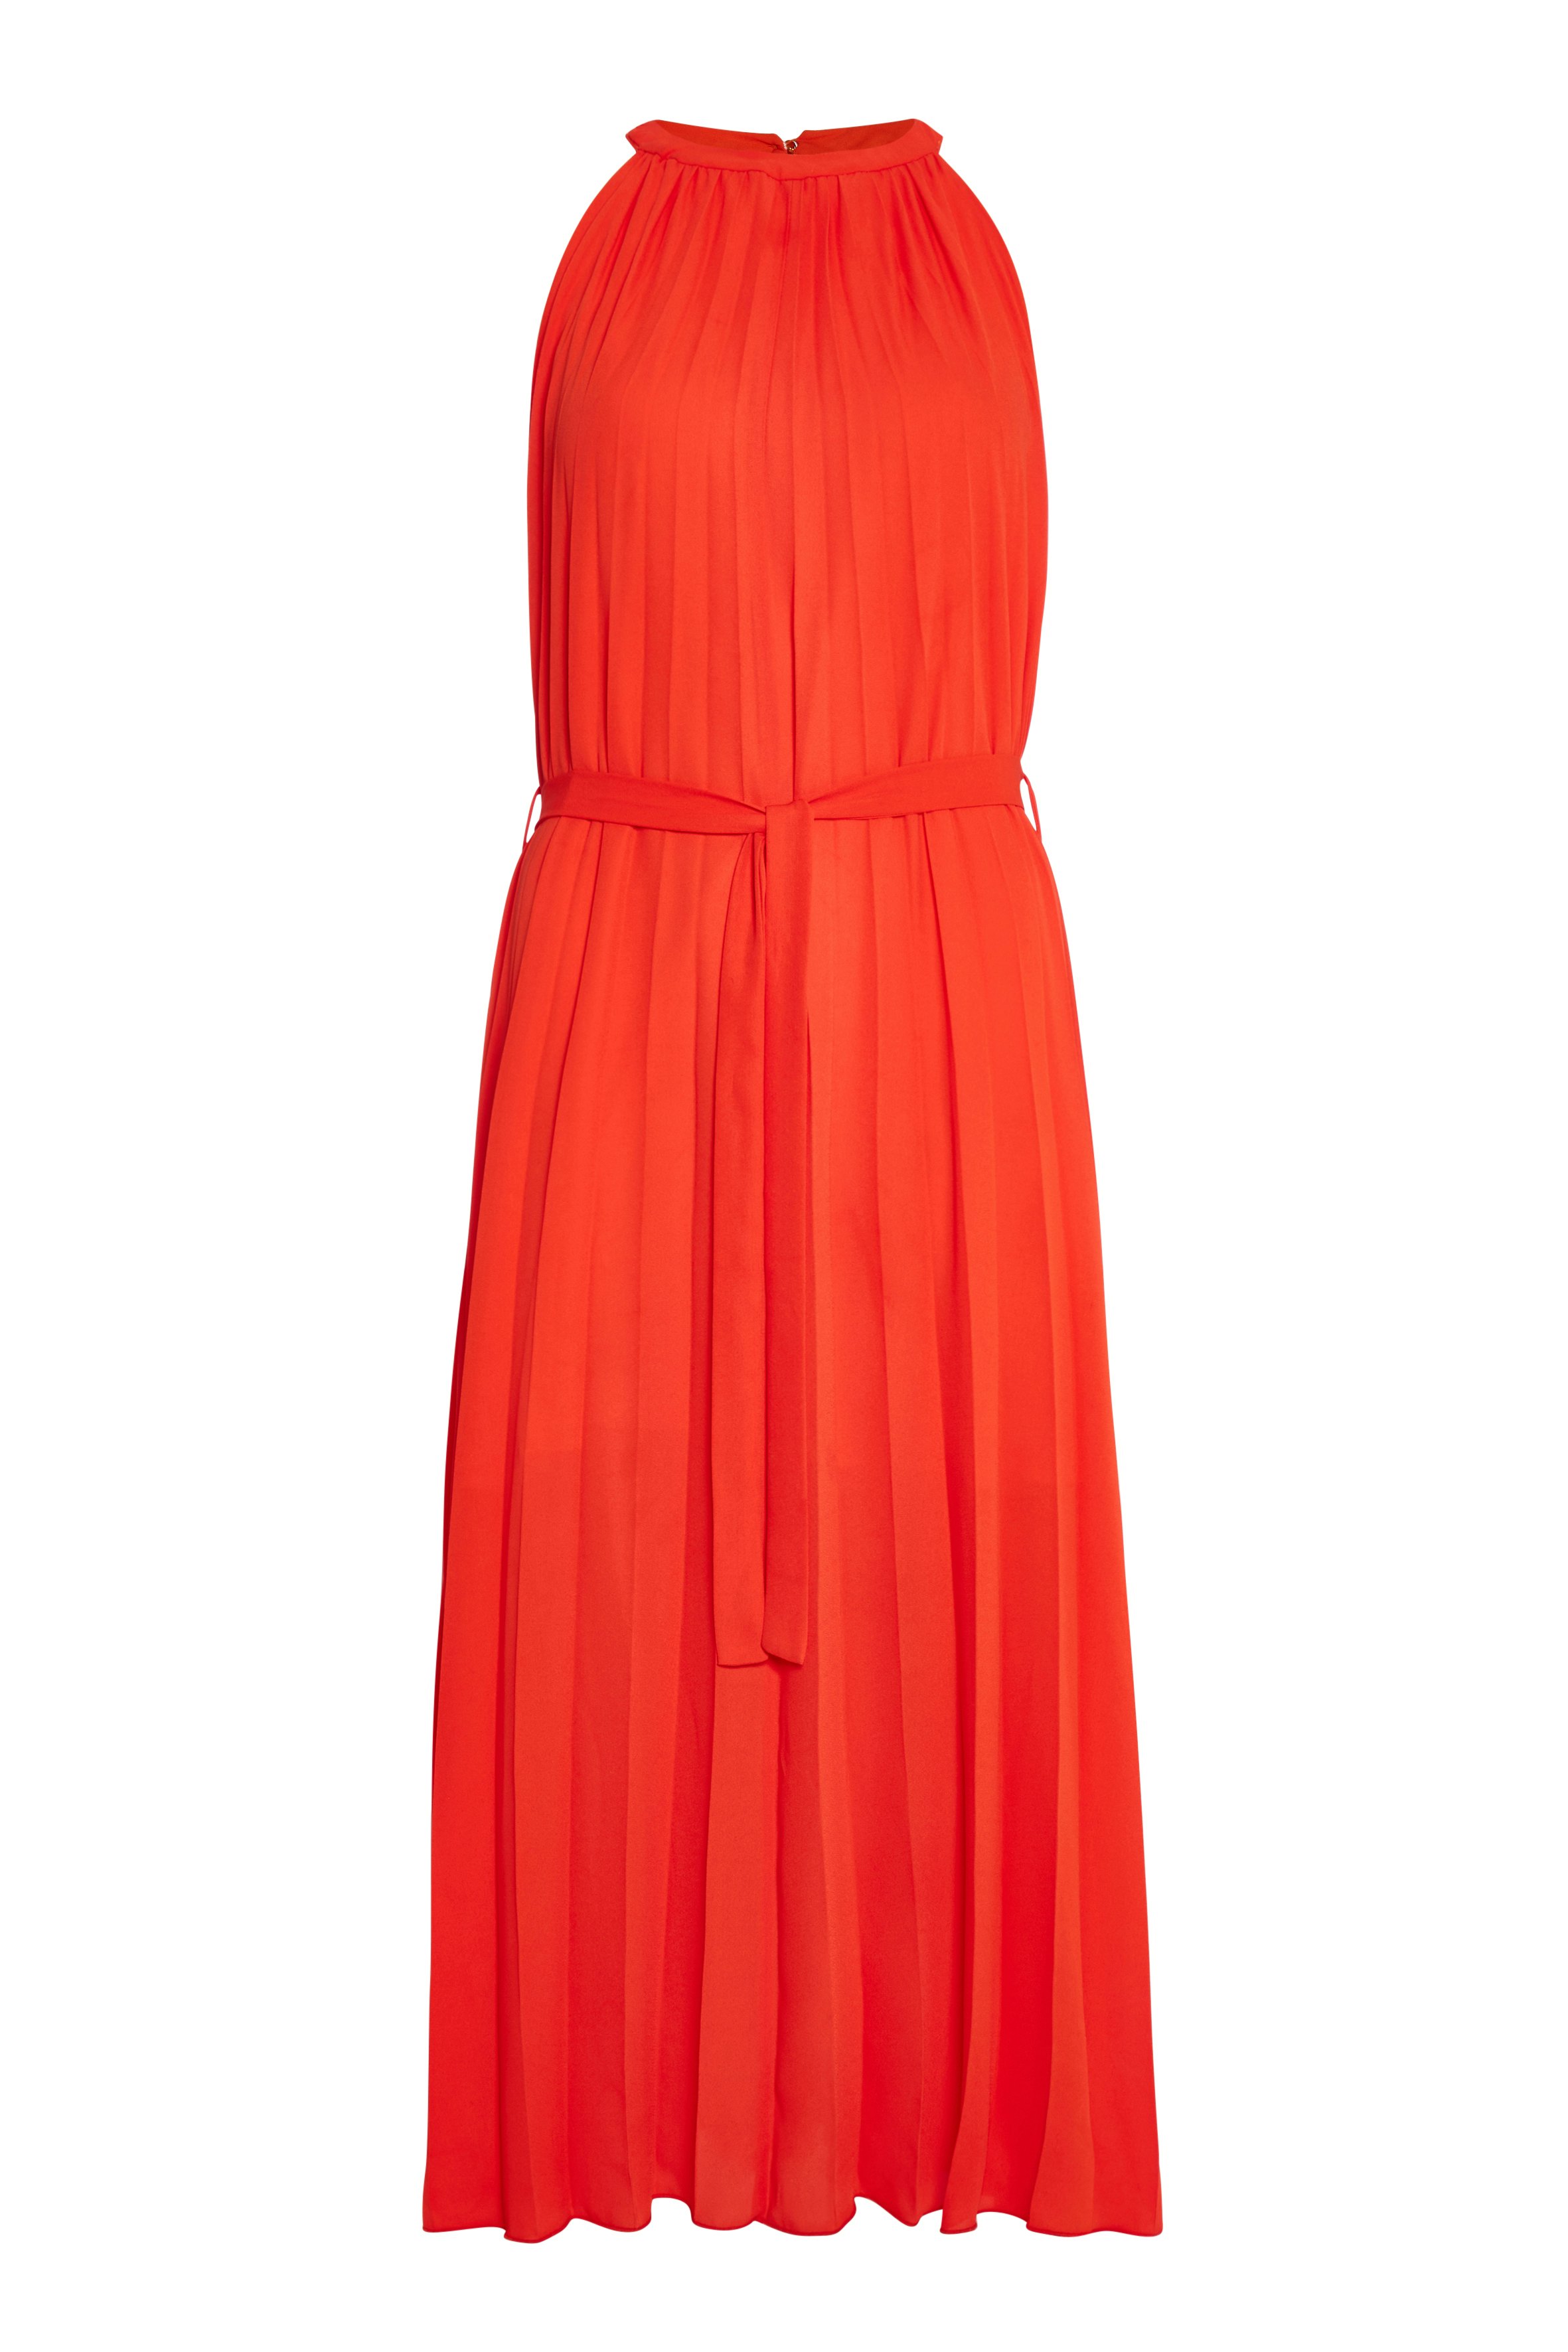 tesco orange dress